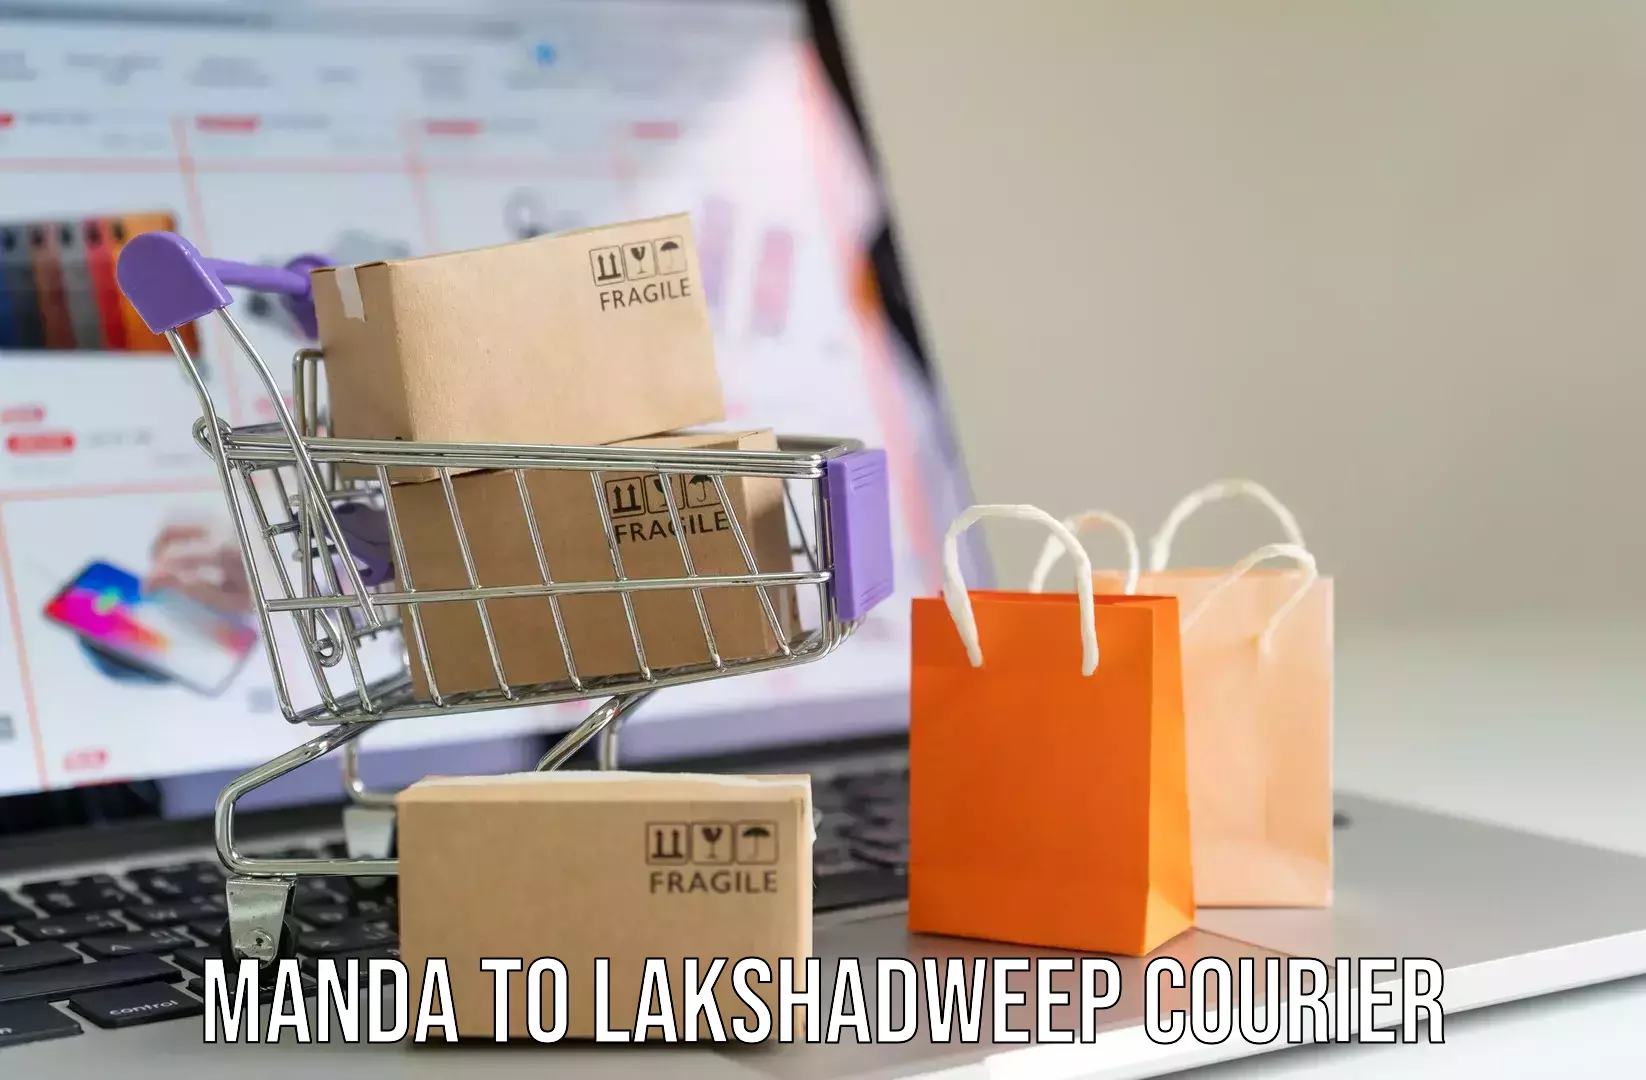 Door-to-door baggage service Manda to Lakshadweep